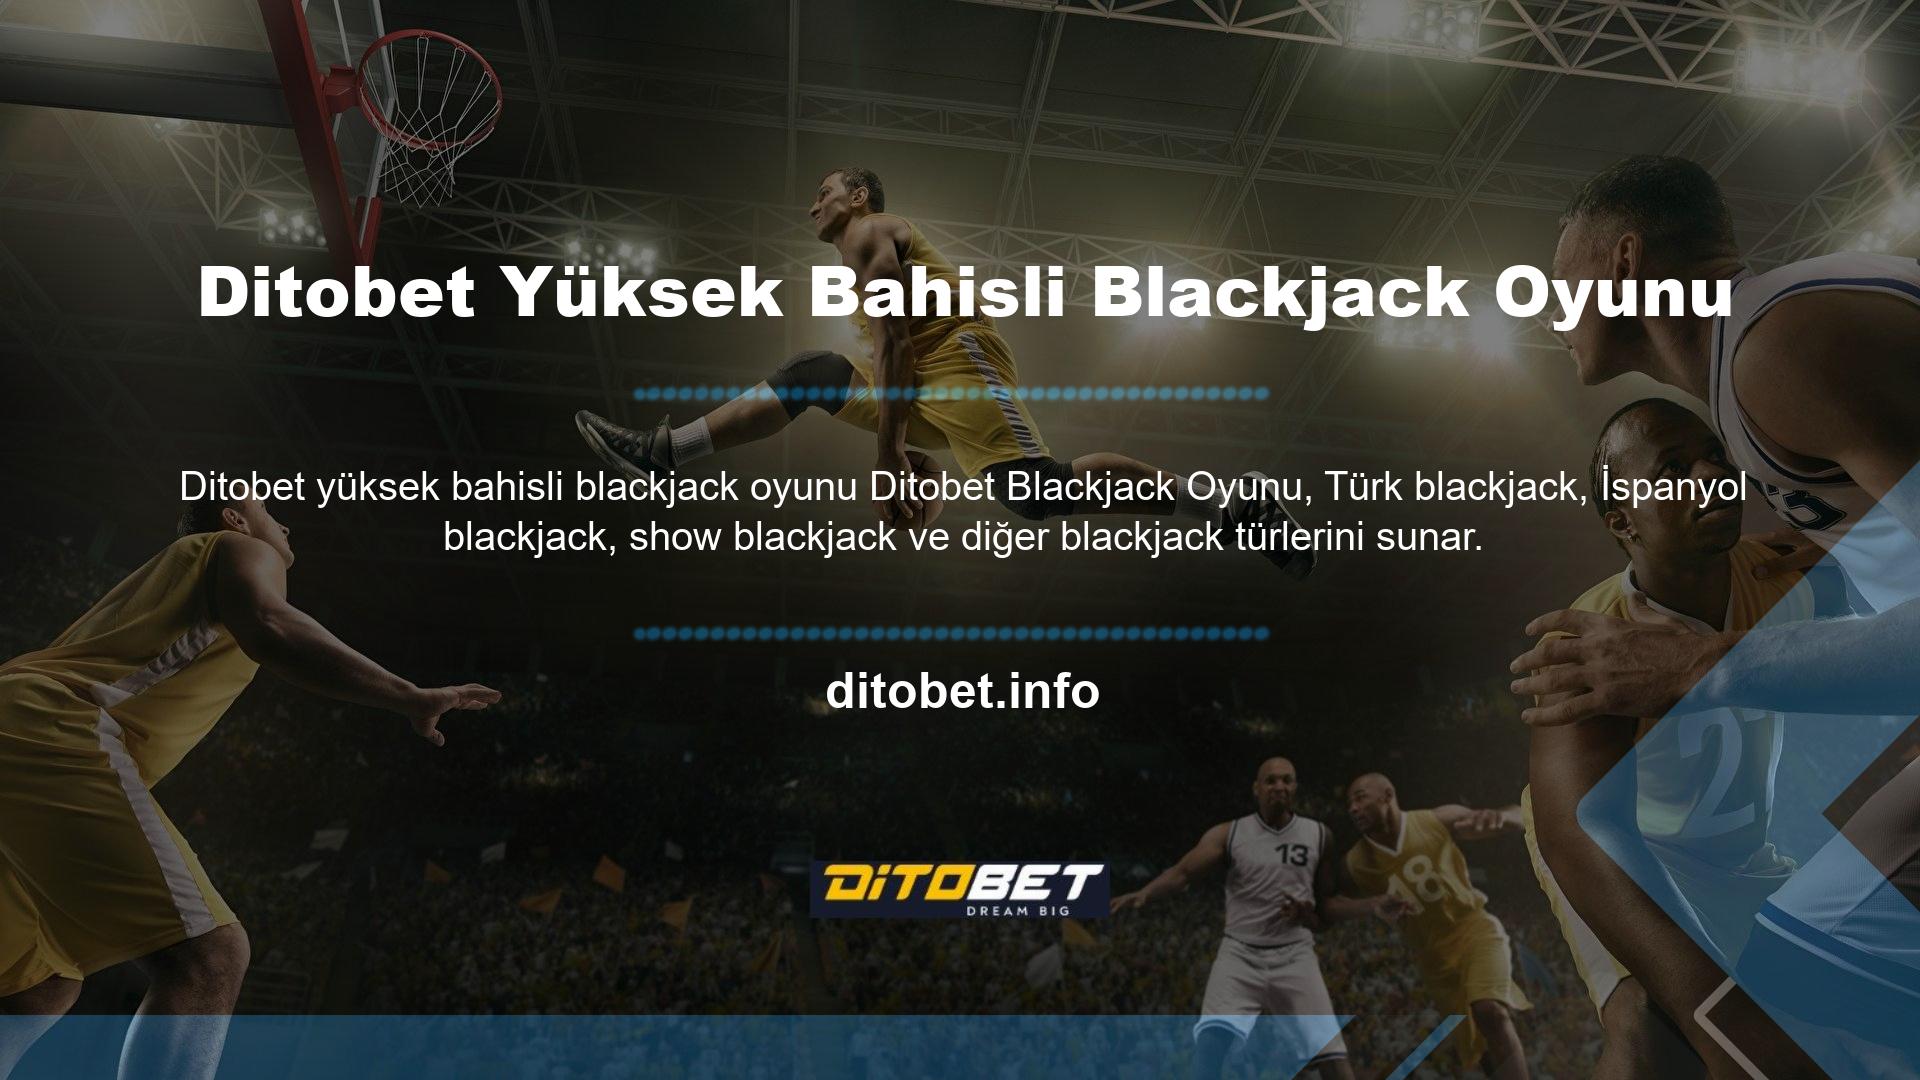 Oyunun kuralları blackjack türüne göre değişir, ancak Ditobet web sitesinde sunulan bahis boyutları aynı kalır